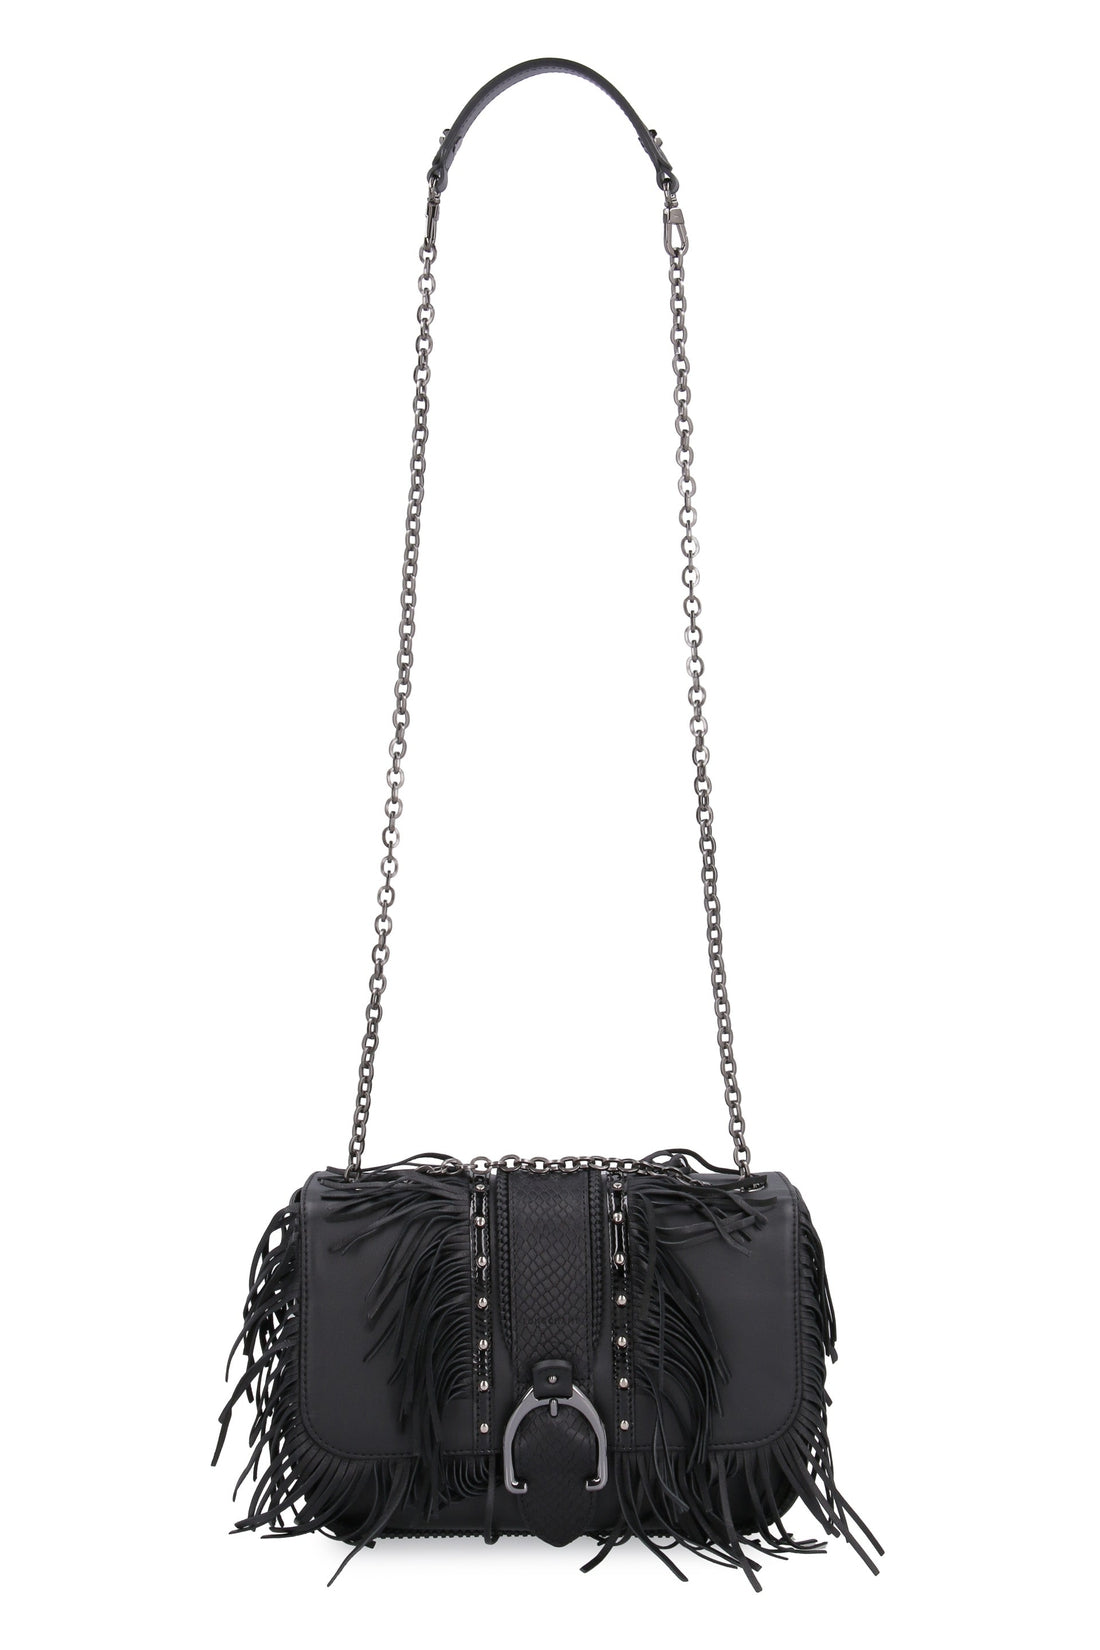 Longchamp-OUTLET-SALE-Fringed leather shoulder bag-ARCHIVIST